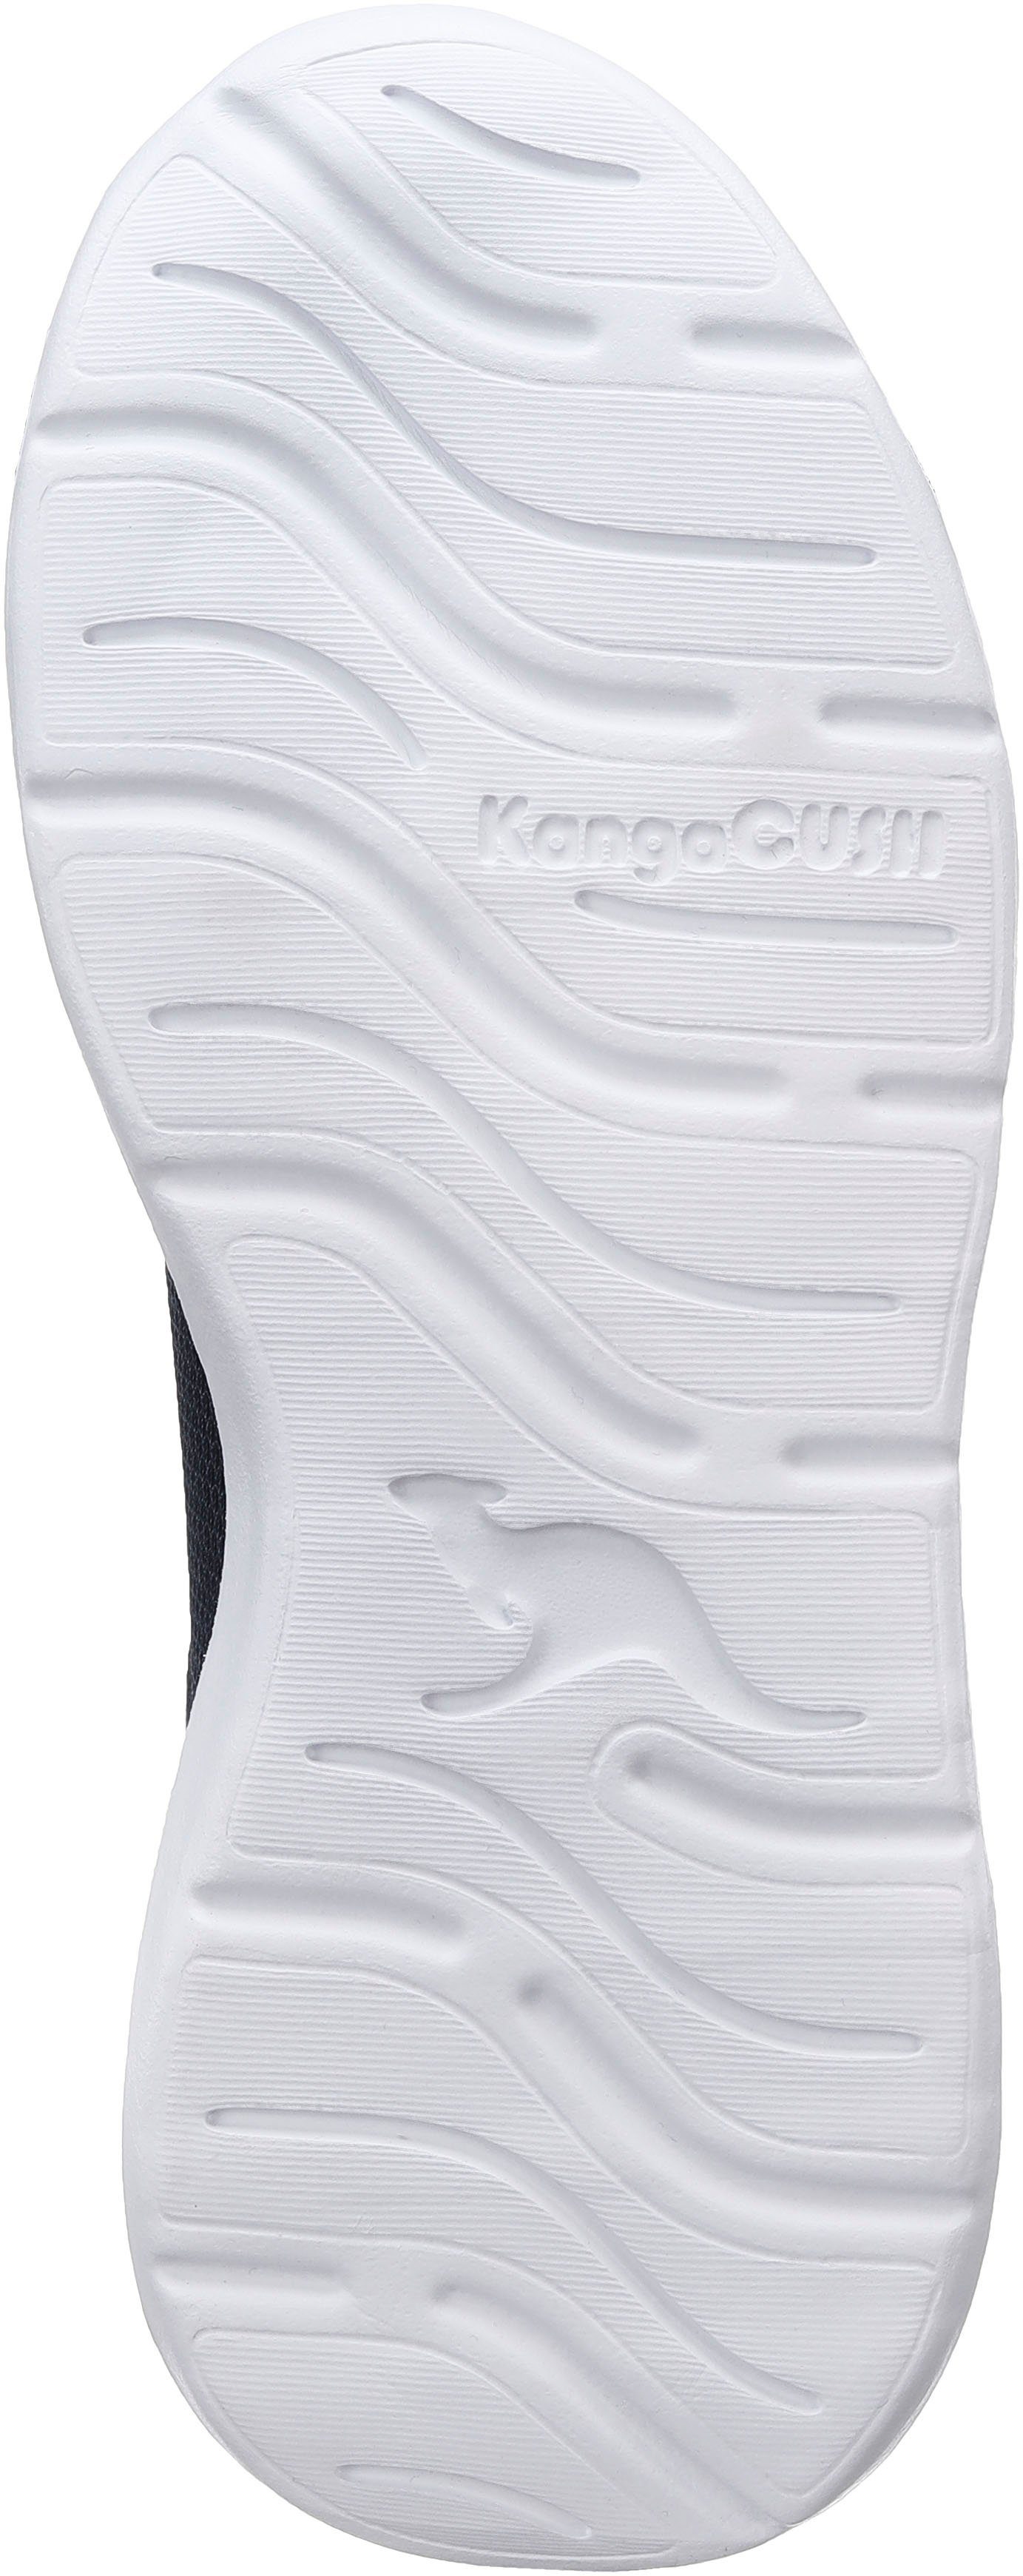 KangaROOS KL-Rise EV Sneaker und Schnürsenkeln navy-lime elastischen mit Klettverschluss